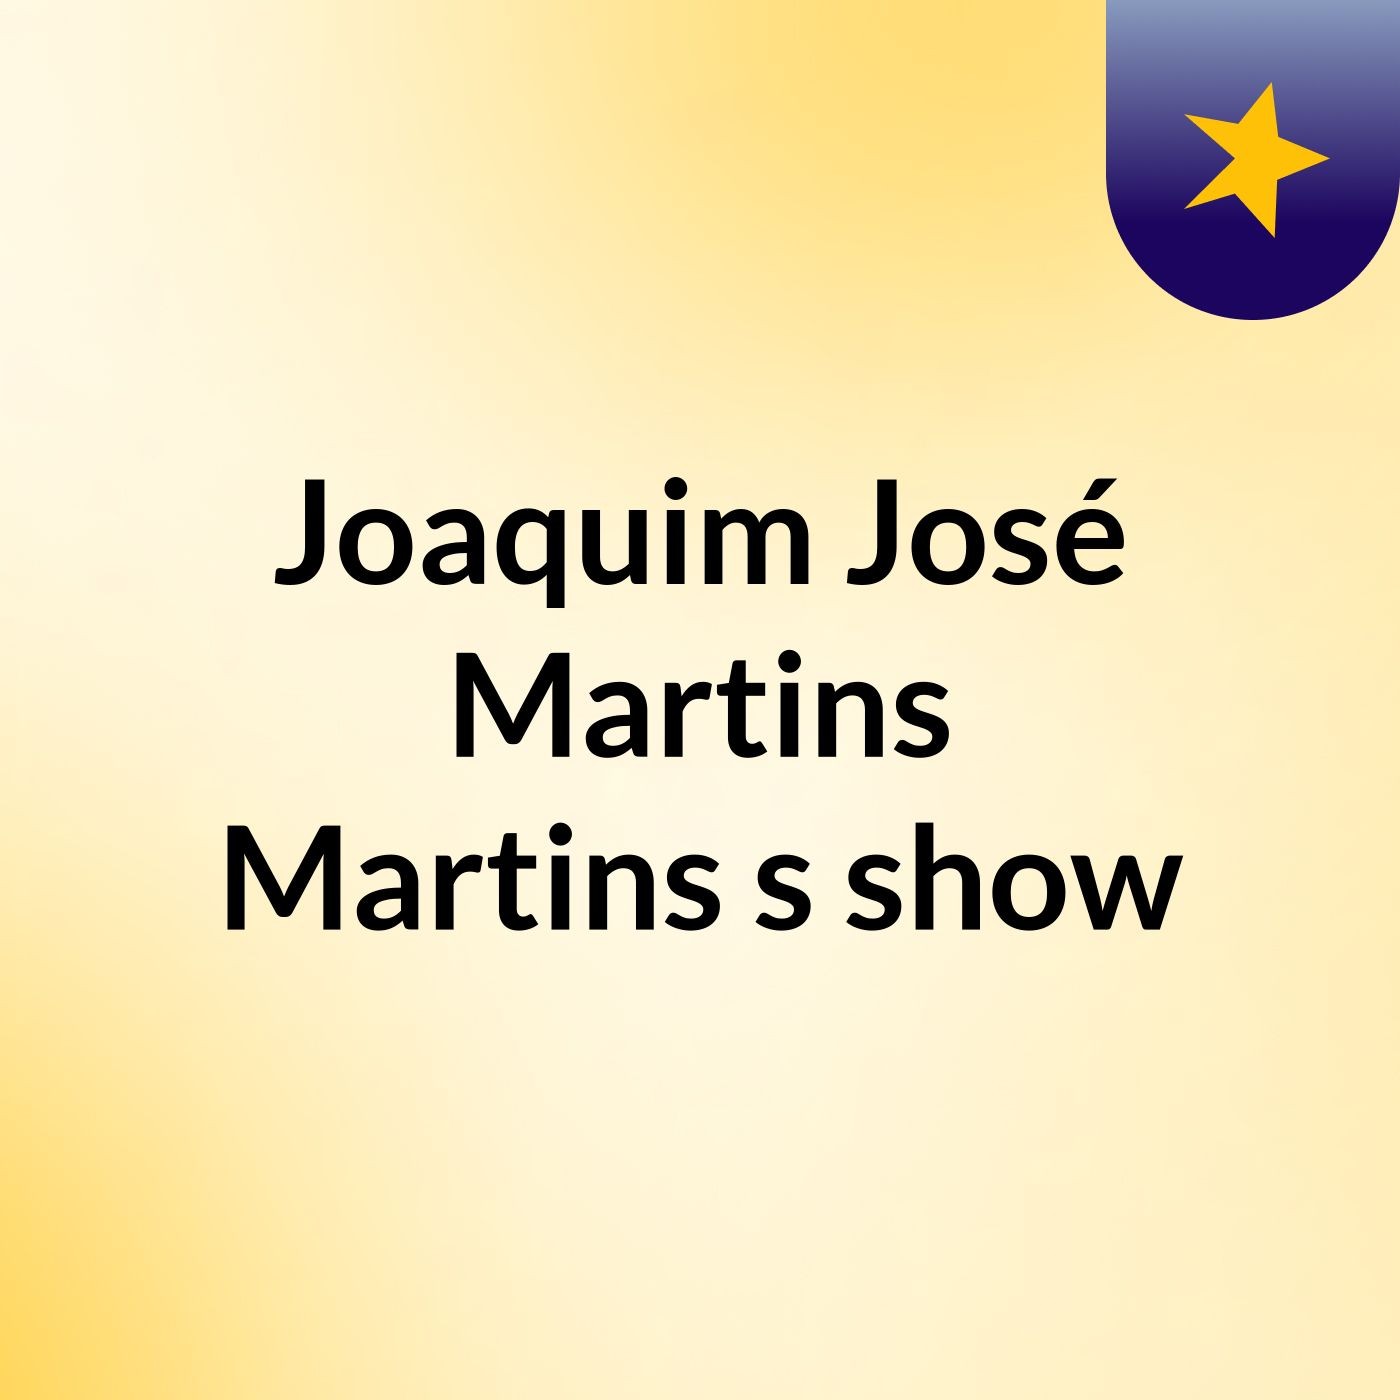 Joaquim José Martins Martins's show